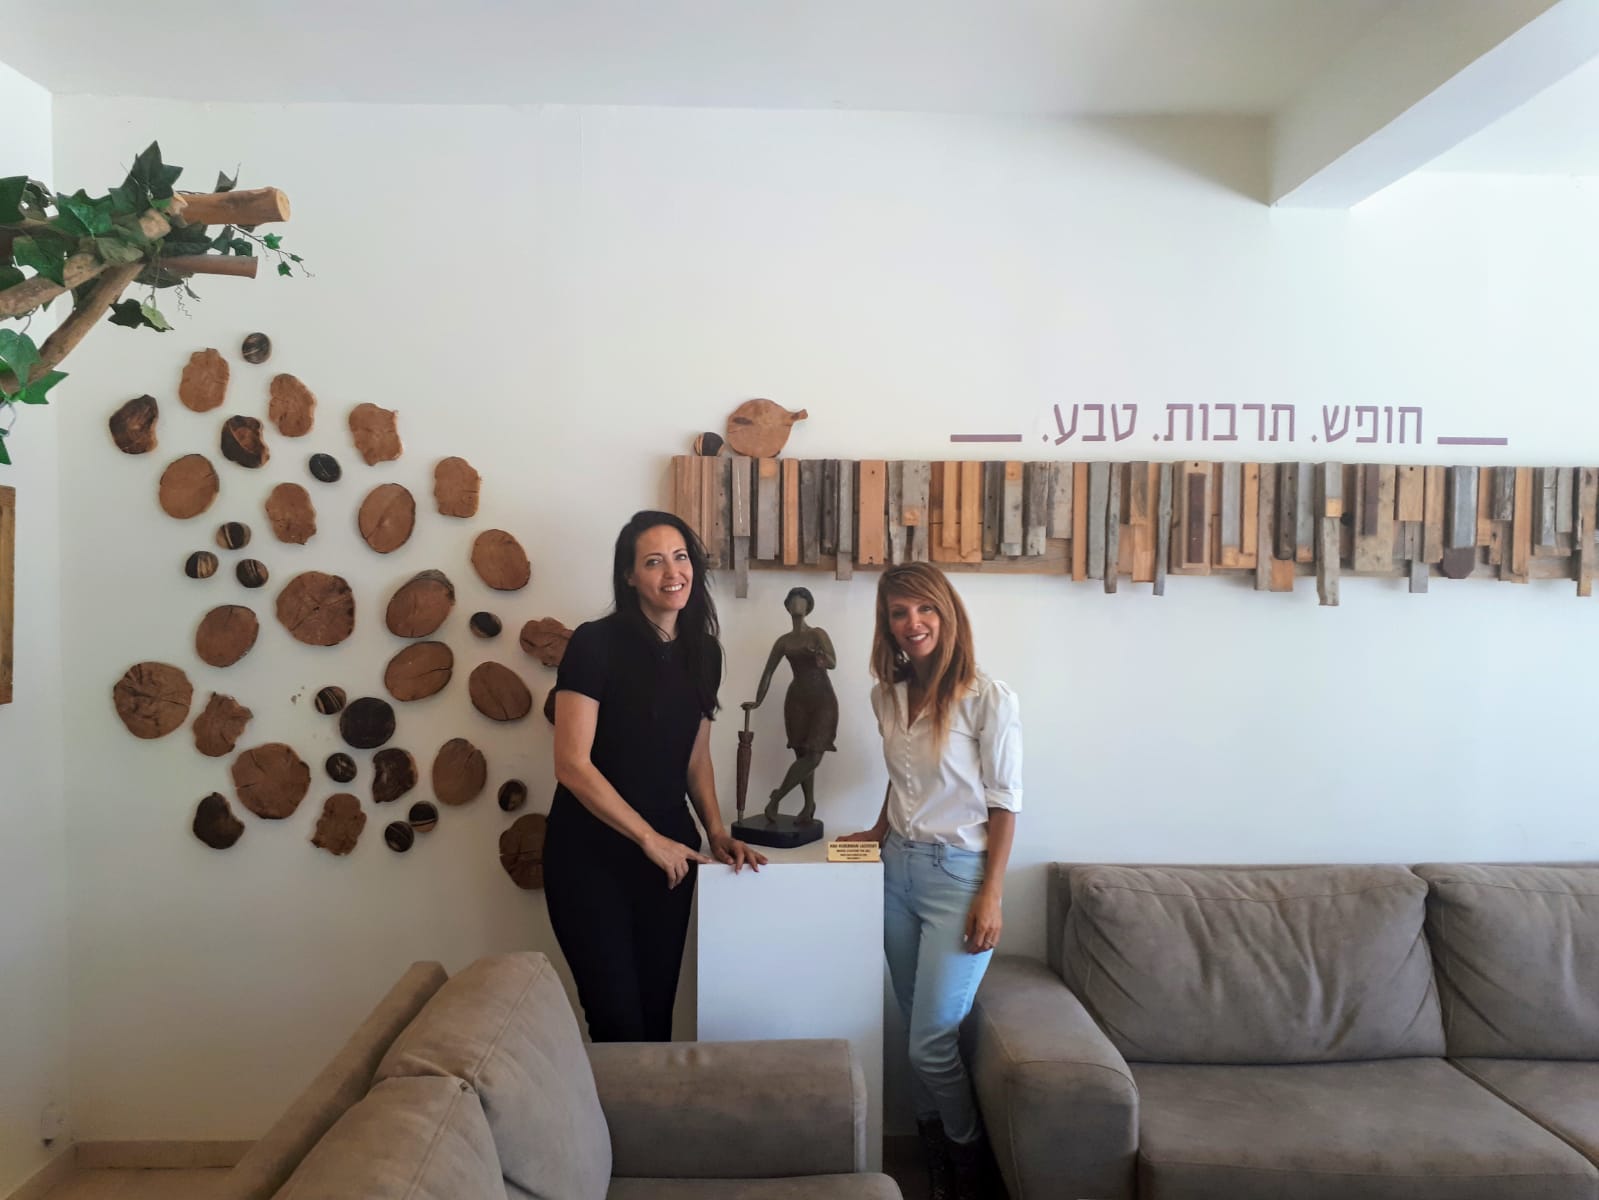 ליהיא לפיד וחגית ארגמן - תערוכה במלון הרי יהודה